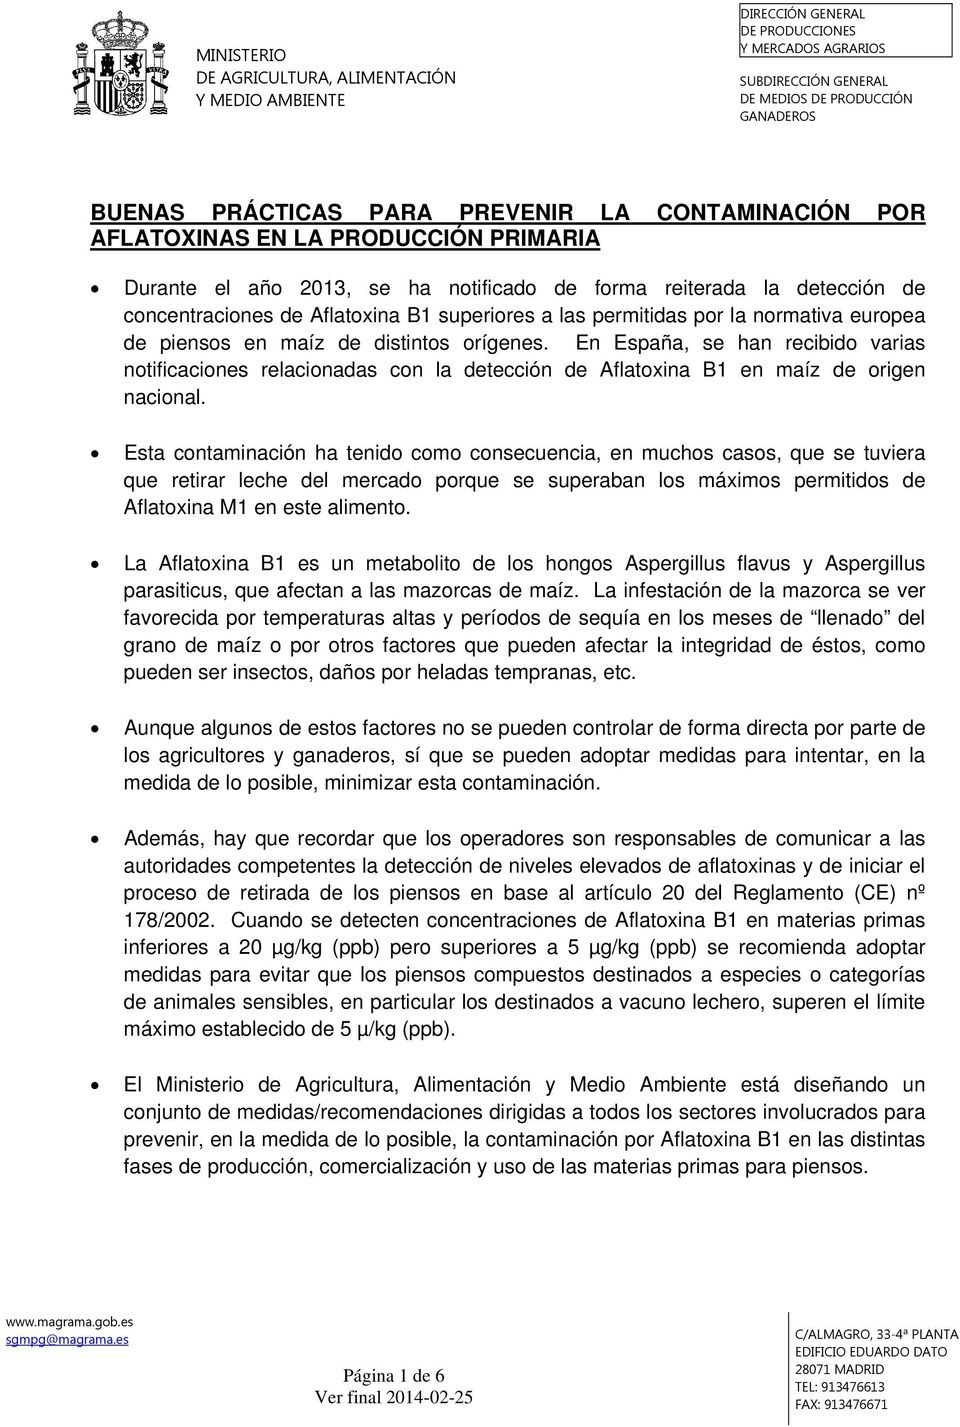 En España, se han recibido varias notificaciones relacionadas con la detección de Aflatoxina B1 en maíz de origen nacional.